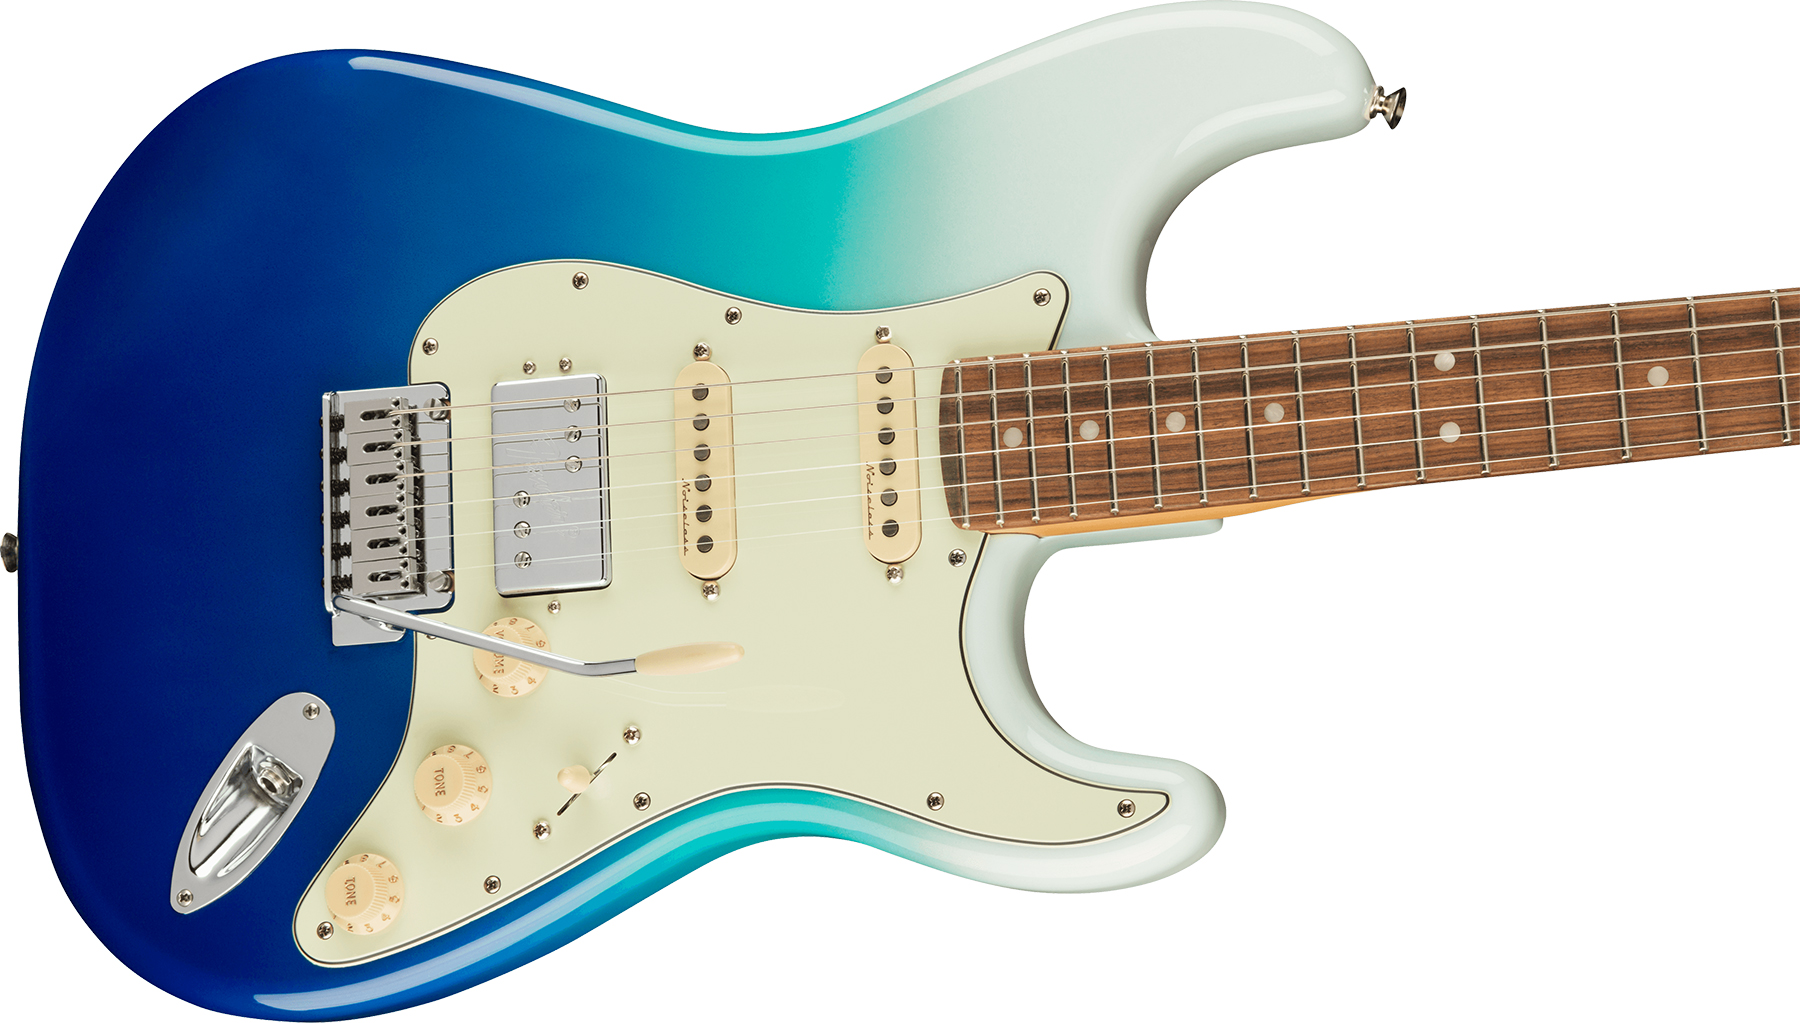 Fender Strat Player Plus Mex Hss Trem Pf - Belair Blue - E-Gitarre in Str-Form - Variation 2